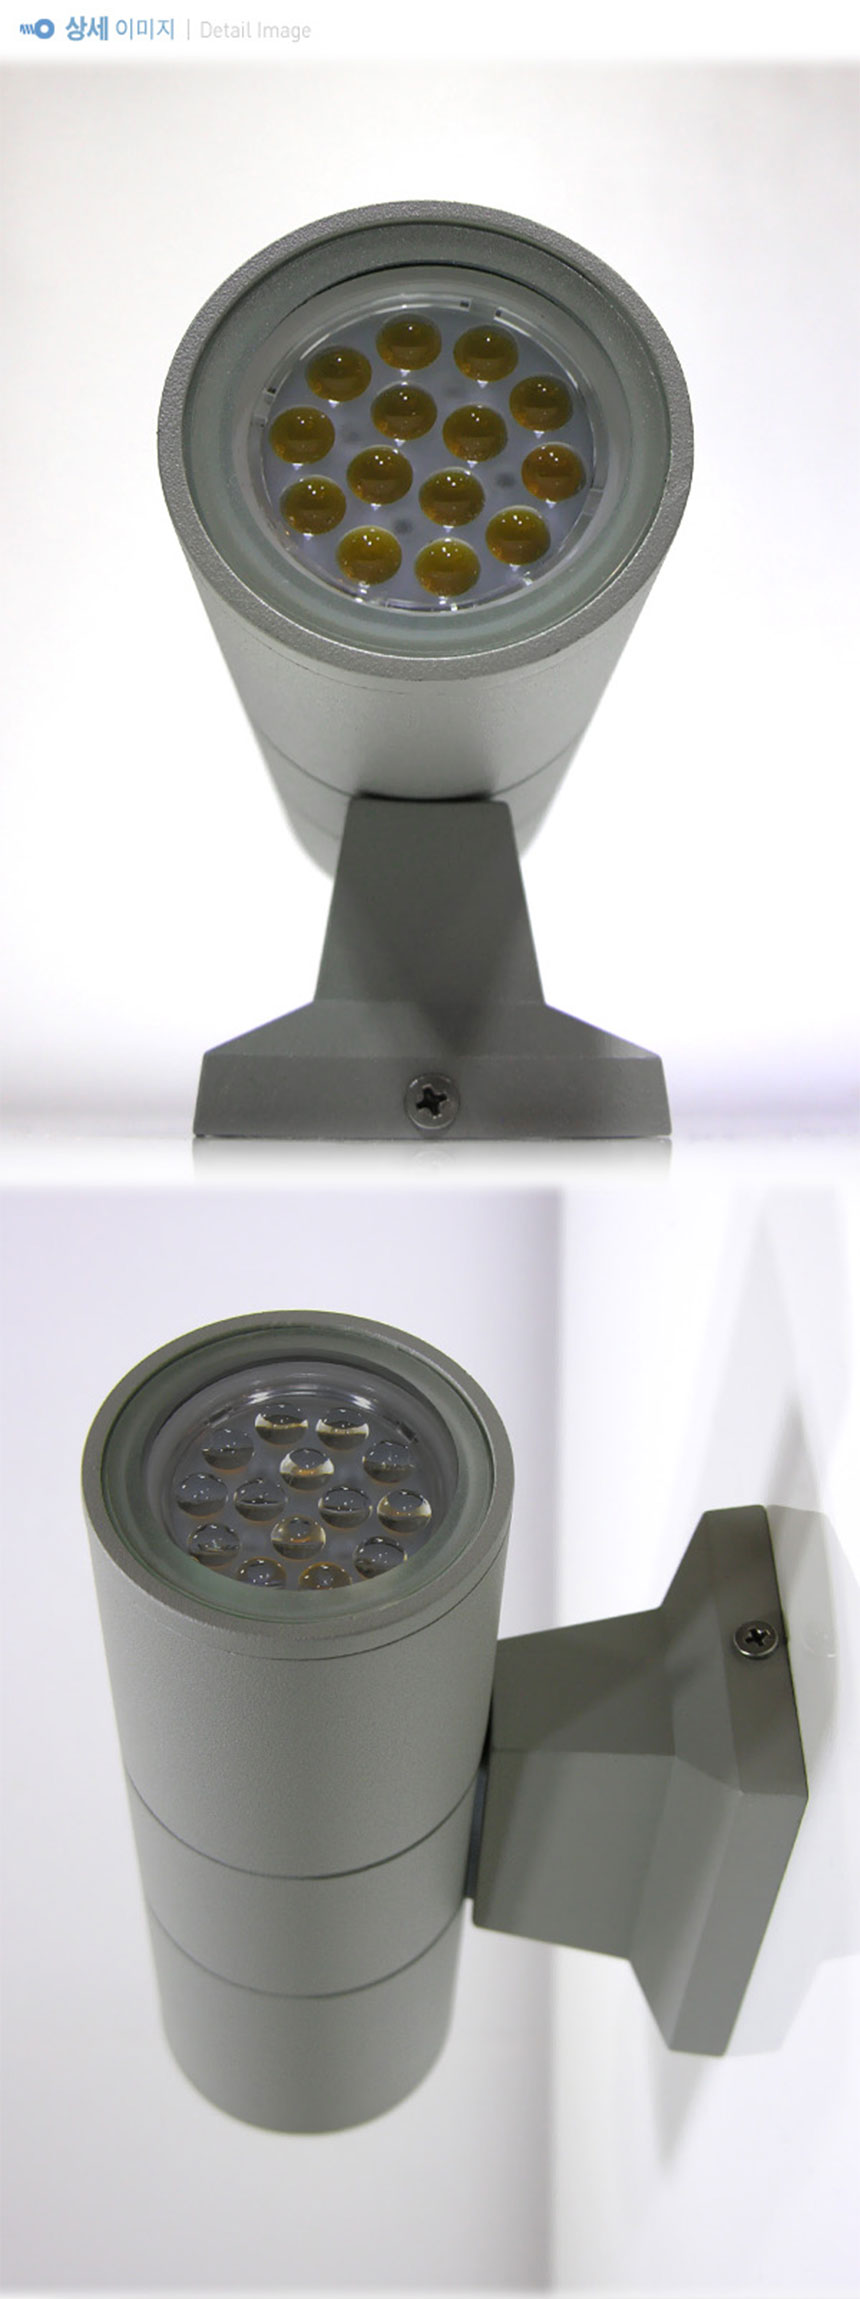 LED 외부 원통 MR16 * 2등 벽등 (그레이)